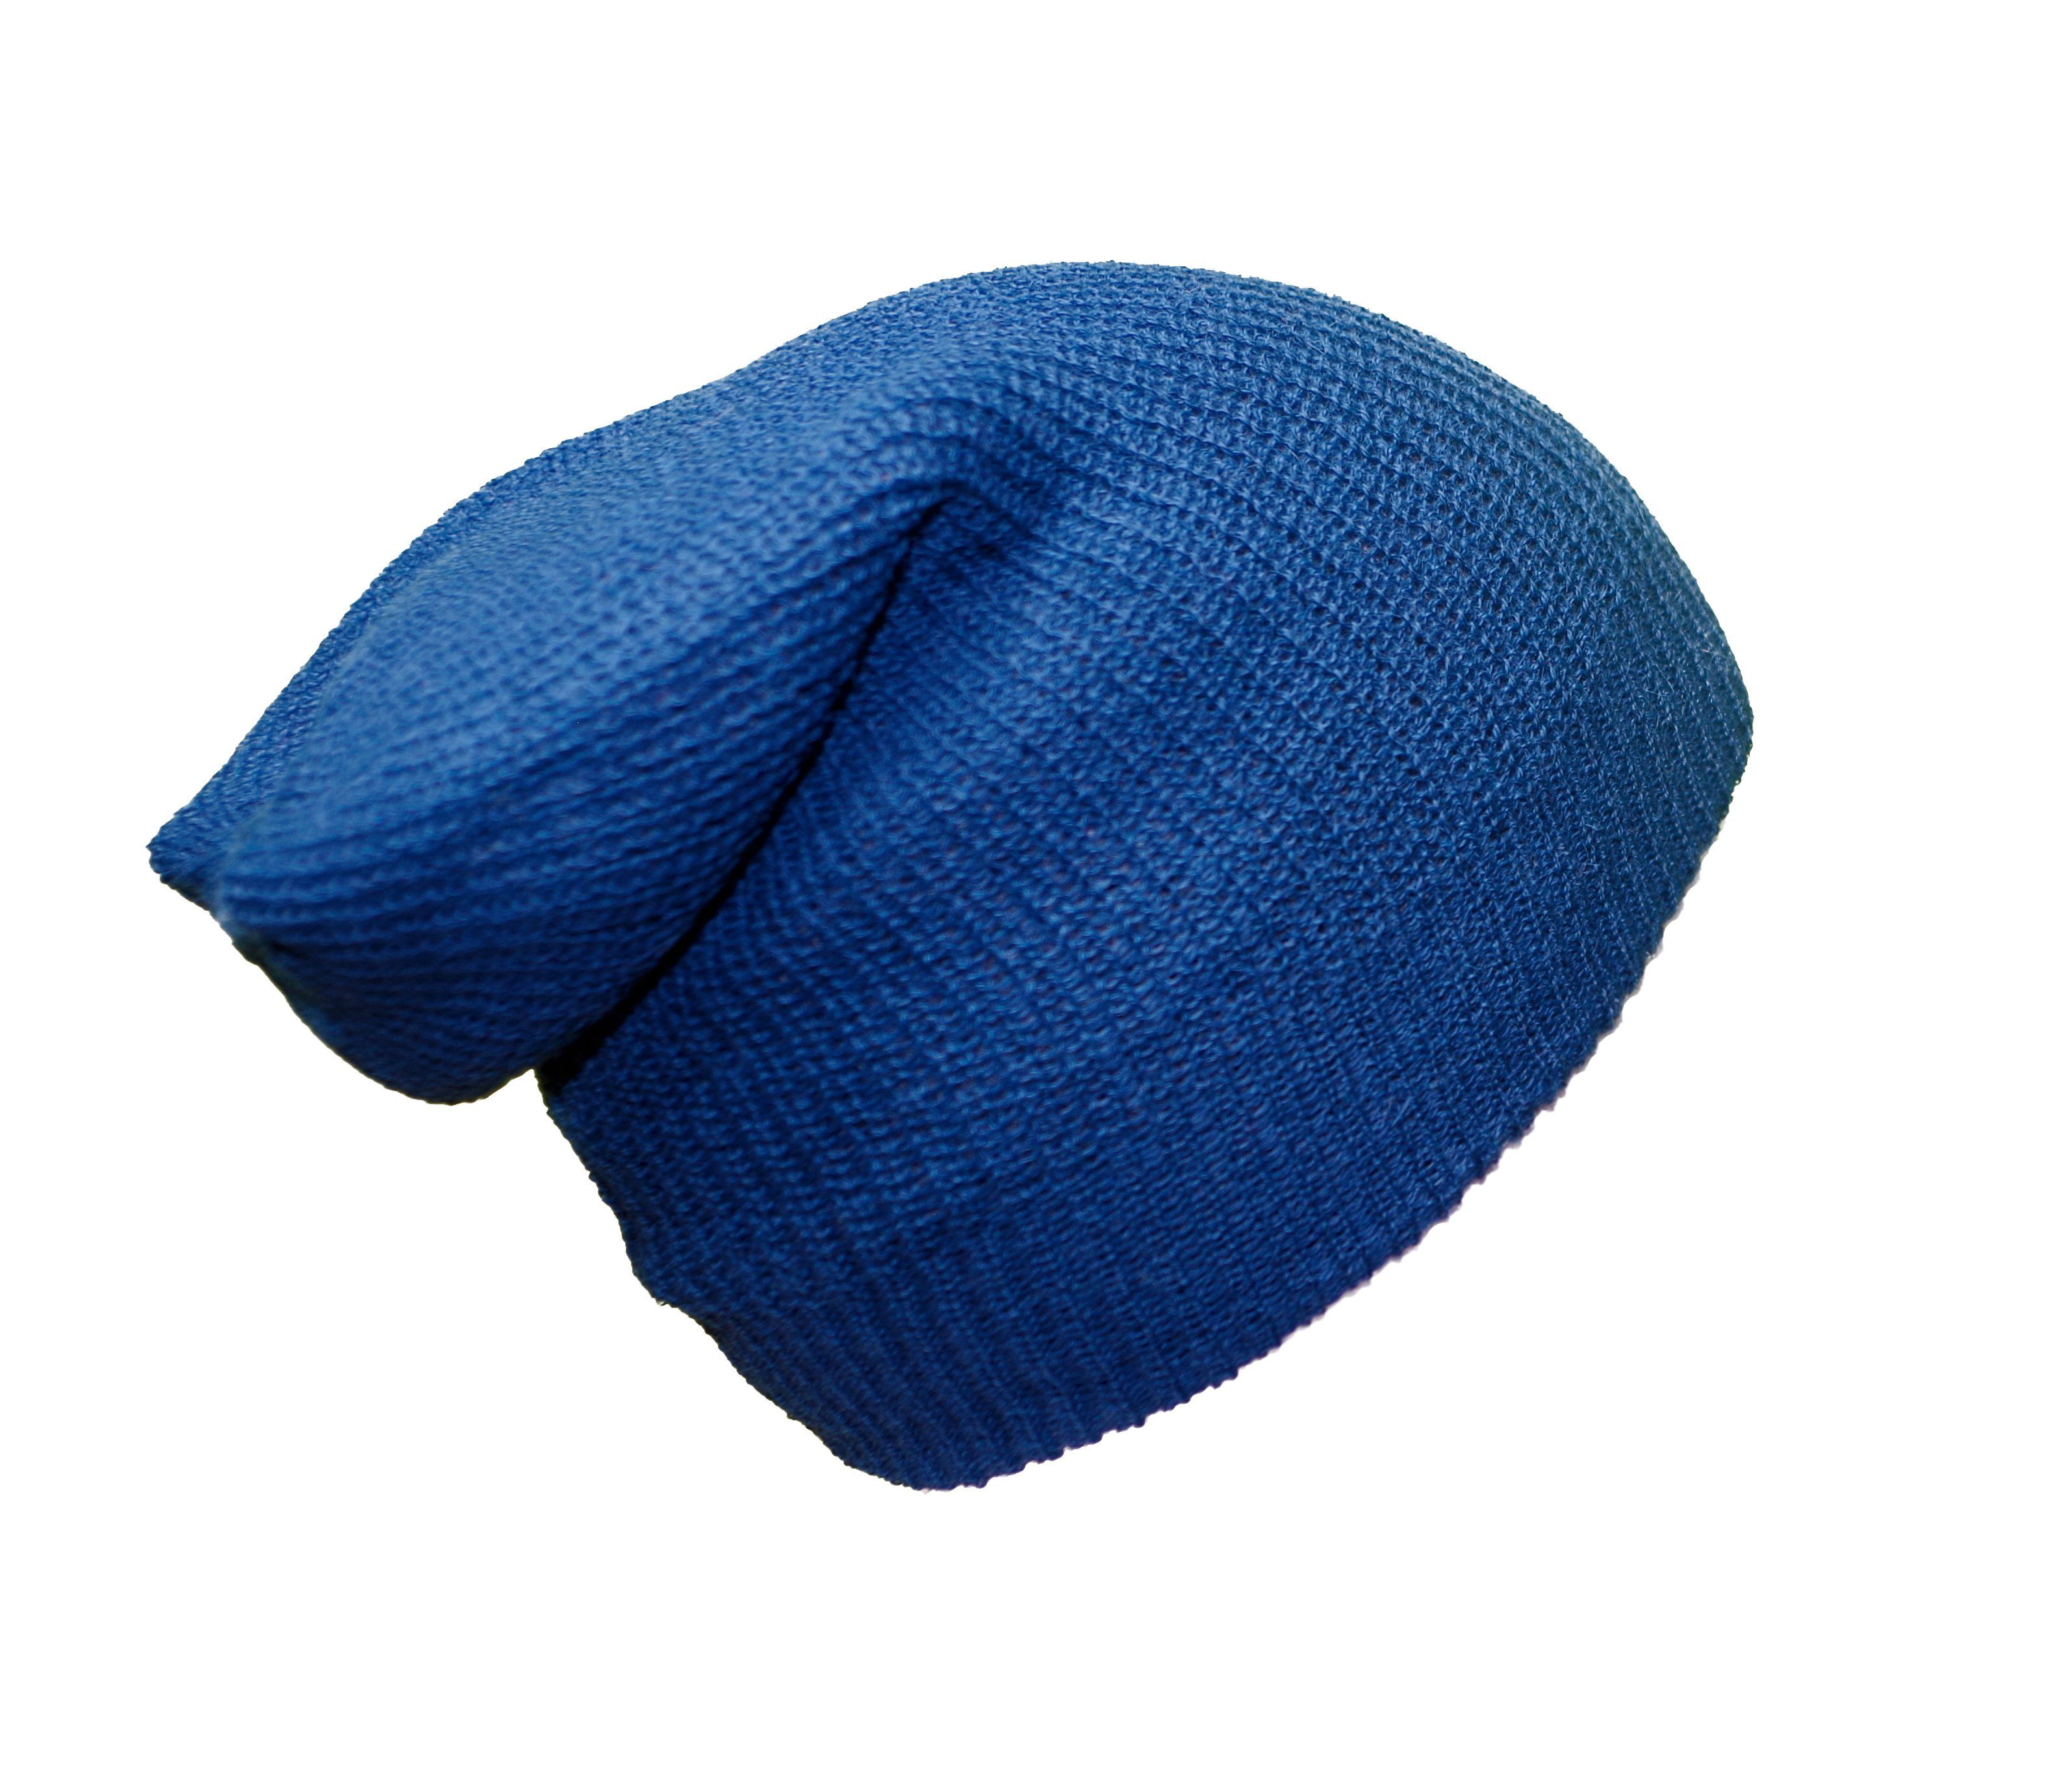 Posh Gear Strickmütze Alpaka Mütze Rettolana aus 100% Alpakawolle blau / grau